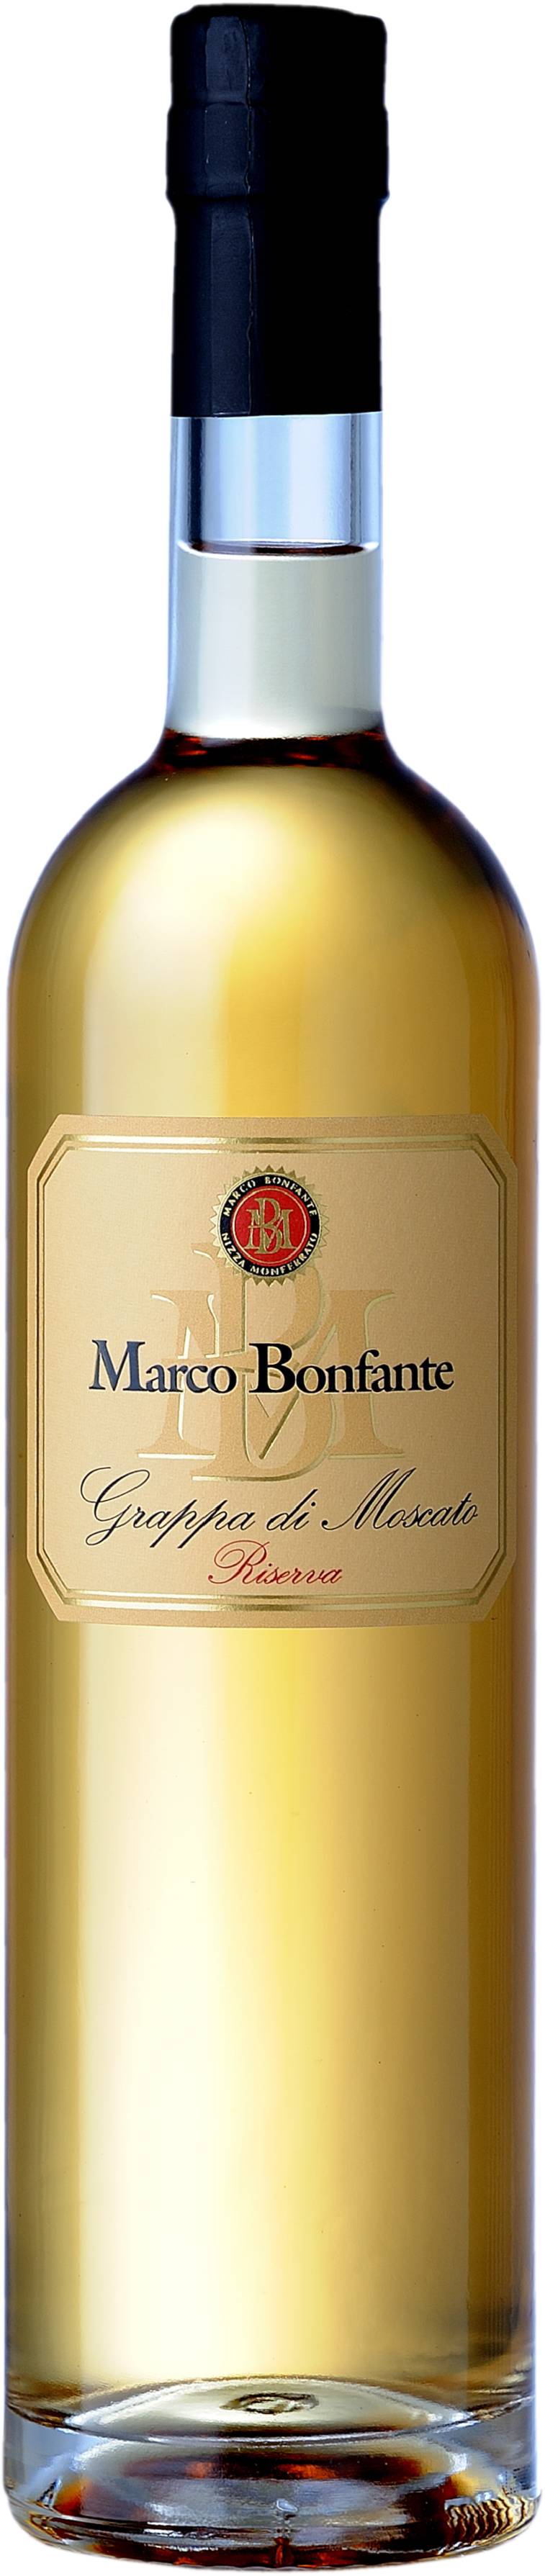 Grappa di Moscato "Marco Bonfante" affinata 42% Vol.